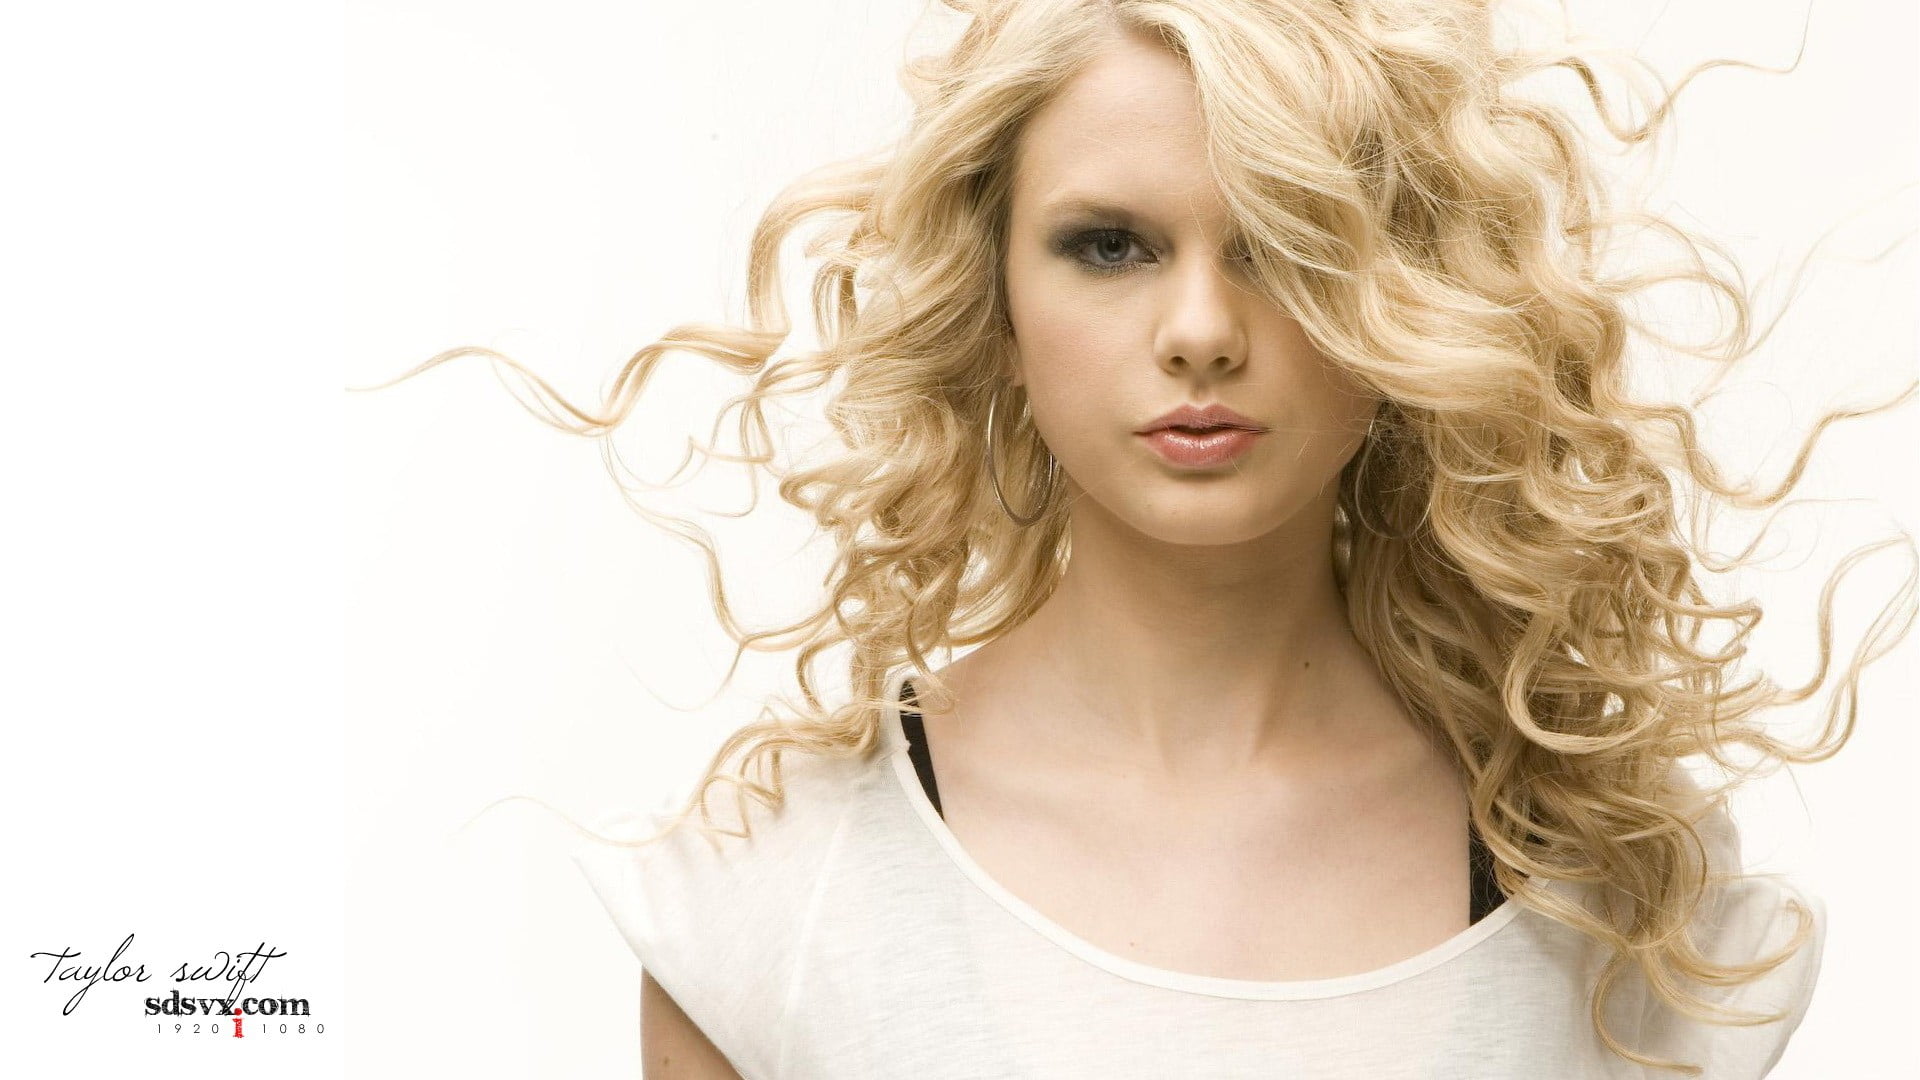 Taylor Swift digital wallpaper, celebrity, Taylor Swift, hoop earrings, pink lipstick